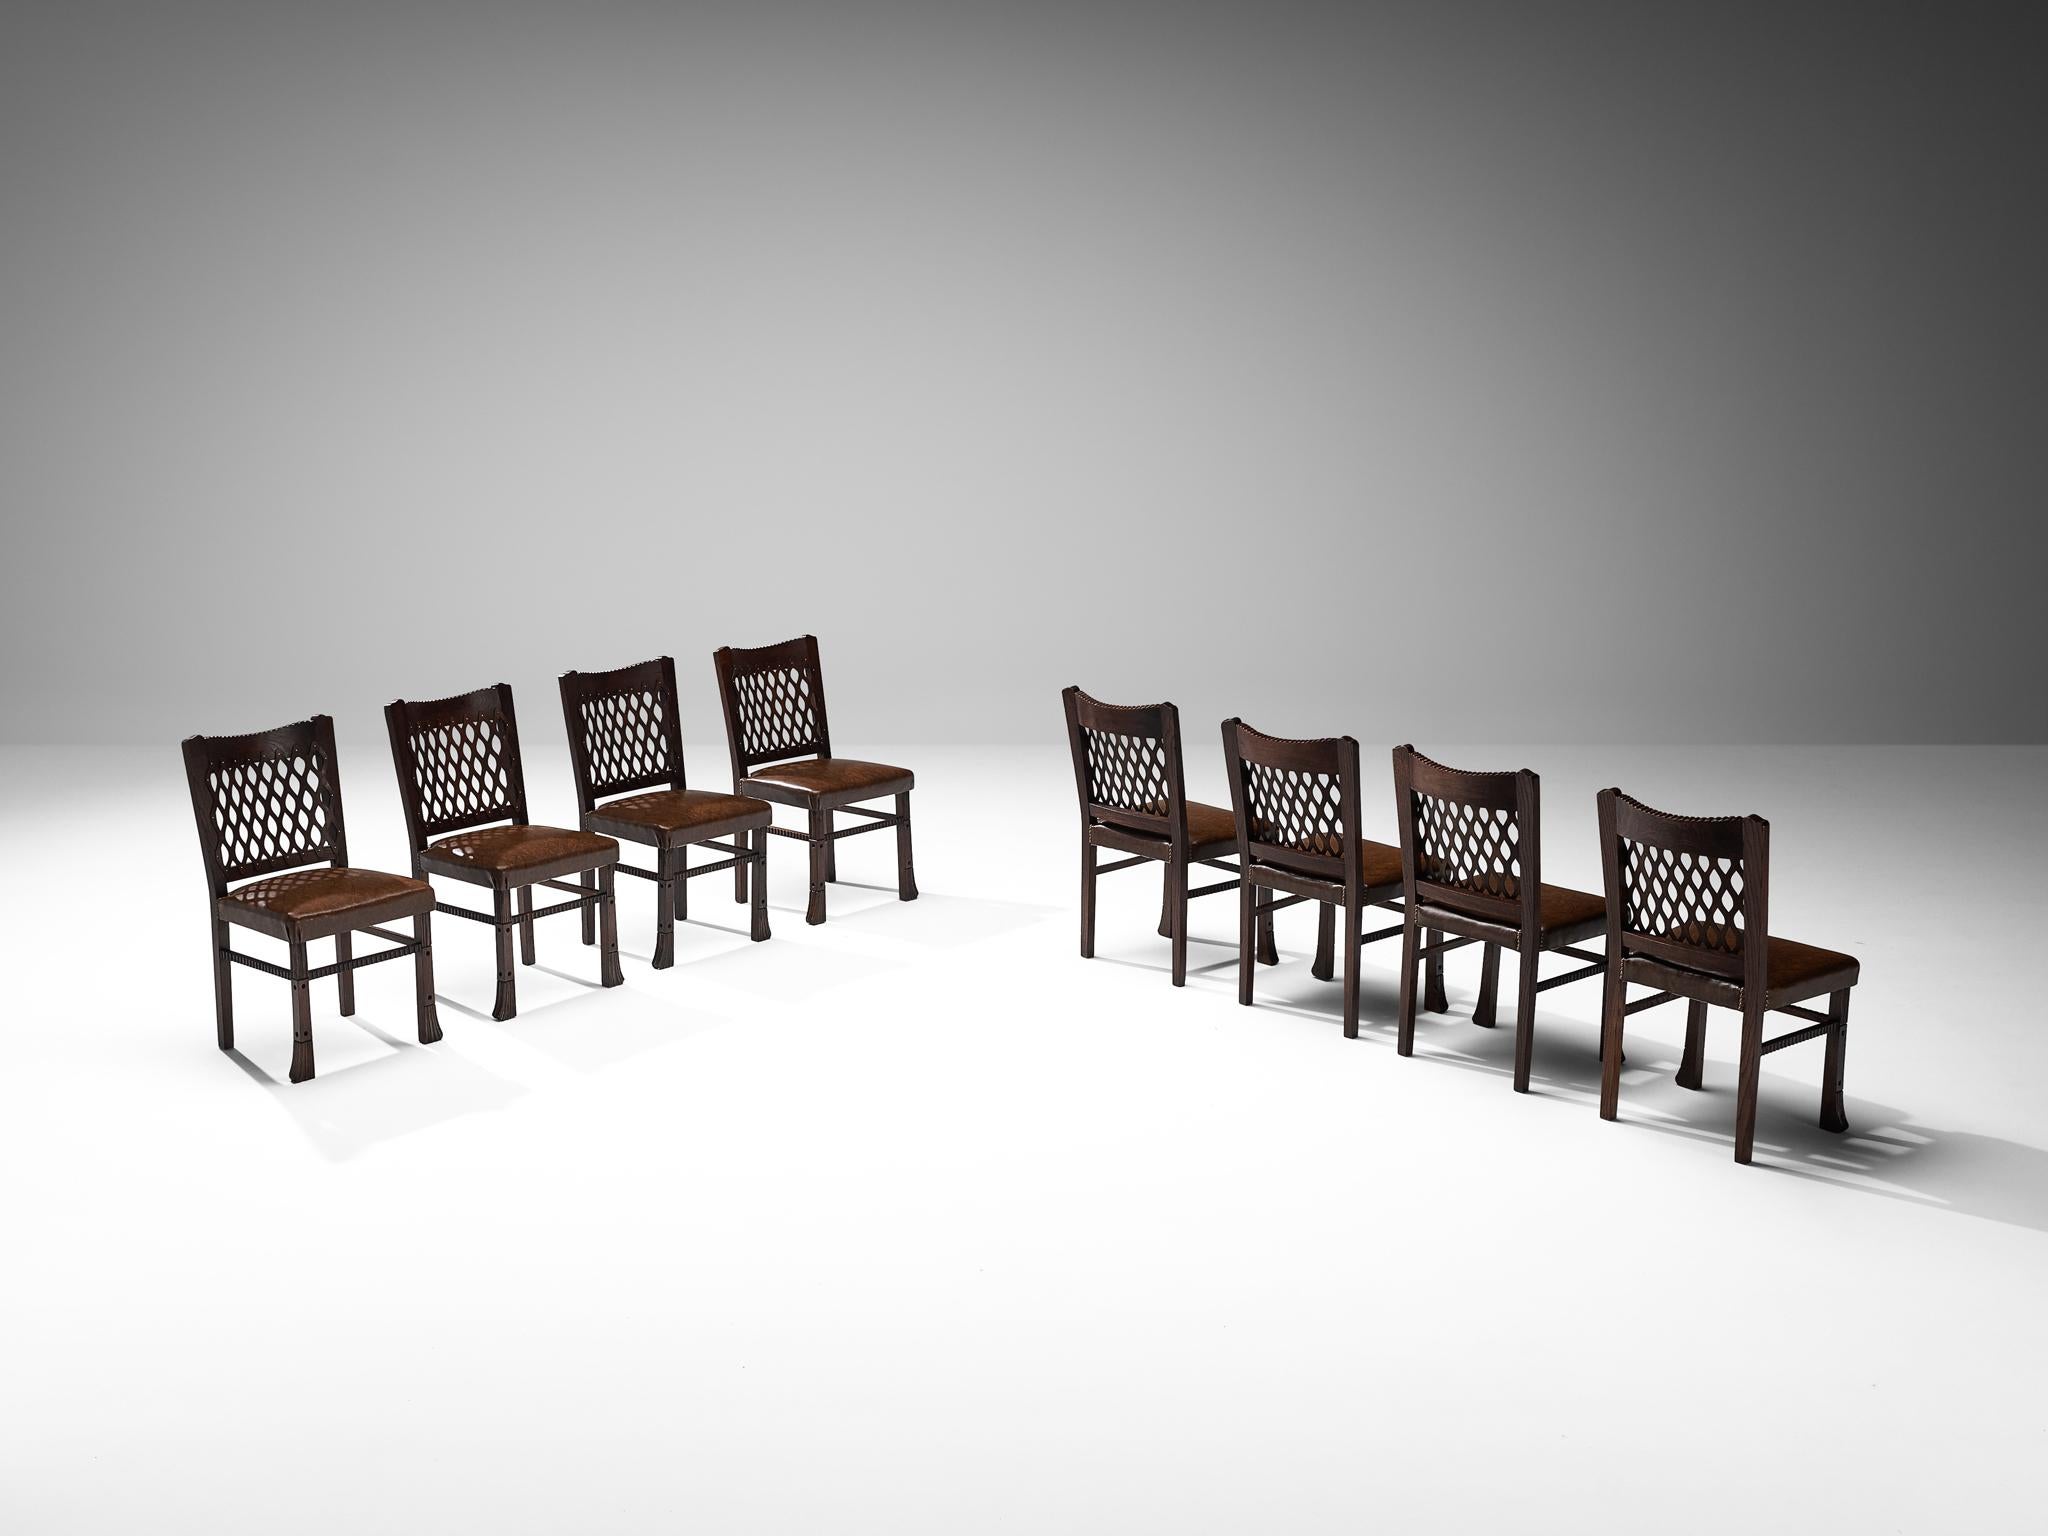 Ernesto Valabrega, Satz von acht Esszimmerstühlen, Eiche, Leder, Metall, Italien, um 1935

Diese wohlgeformten Stühle stammen aus einer der einflussreichsten Epochen der Kunst, nämlich der Art-Déco-Bewegung. Die Stühle zeugen von dem ausgezeichneten